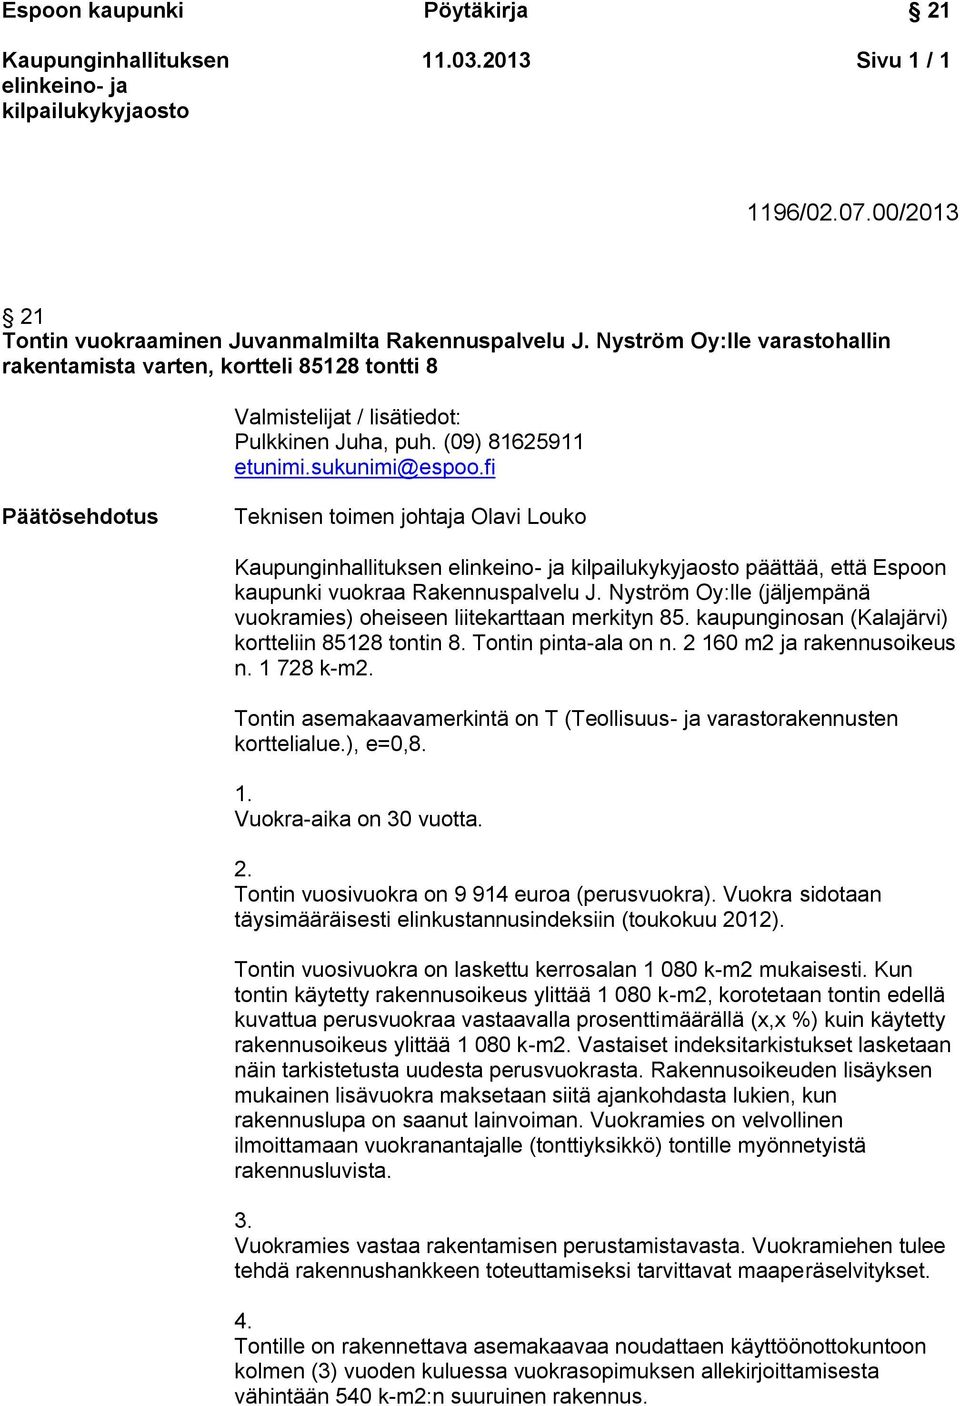 fi Päätösehdotus Teknisen toimen johtaja Olavi Louko päättää, että Espoon kaupunki vuokraa Rakennuspalvelu J. Nyström Oy:lle (jäljempänä vuokramies) oheiseen liitekarttaan merkityn 85.